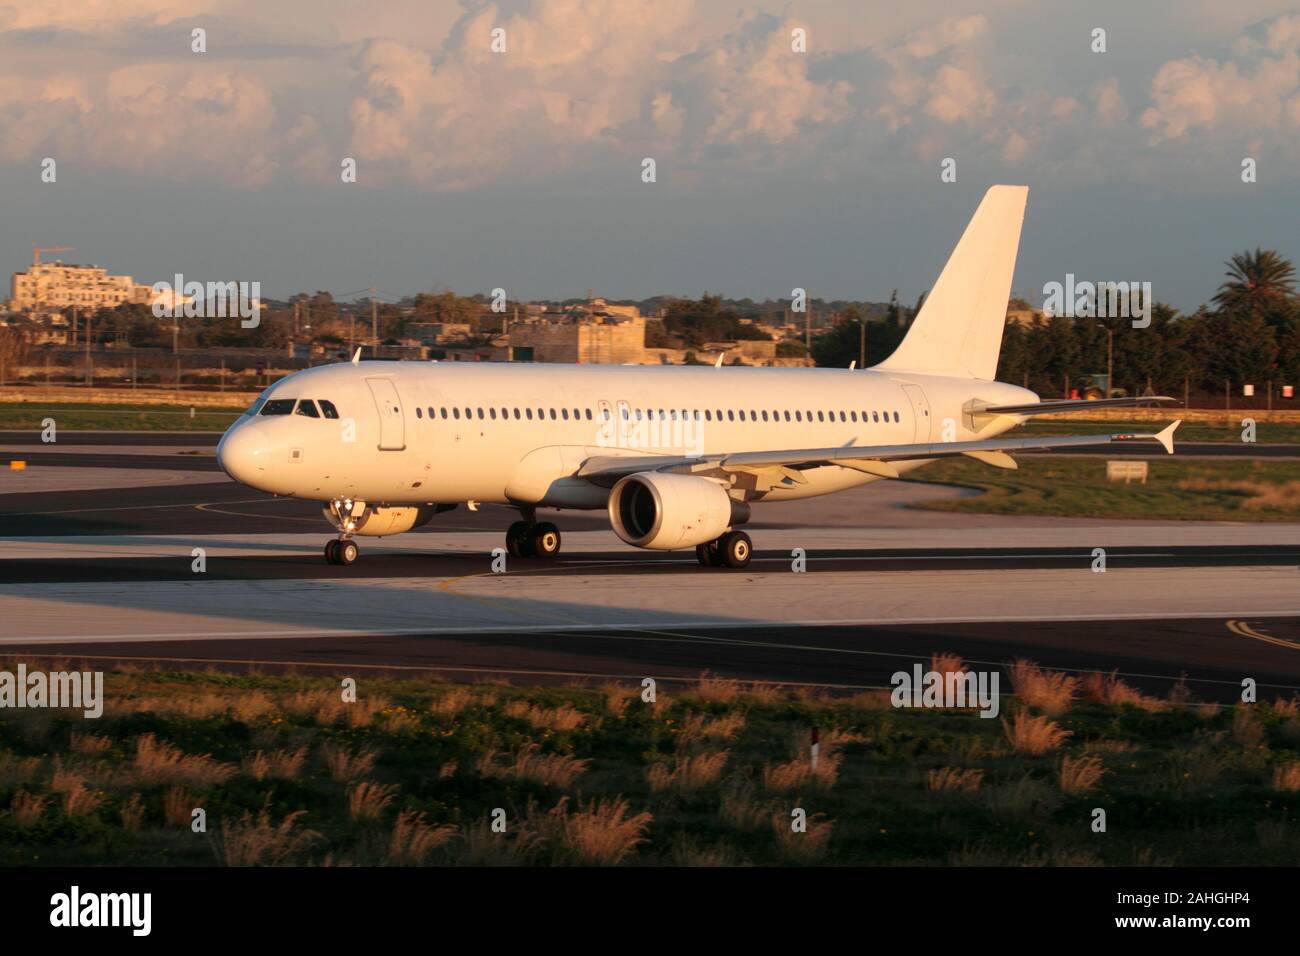 Flugreisen und Zivilluftfahrt. Unmarkiertes Airbus A320-Passagierflugzeug auf der Start- und Landebahn bei Sonnenuntergang. Titel, Logo oder Logo der Fluggesellschaft sind nicht sichtbar. Stockfoto